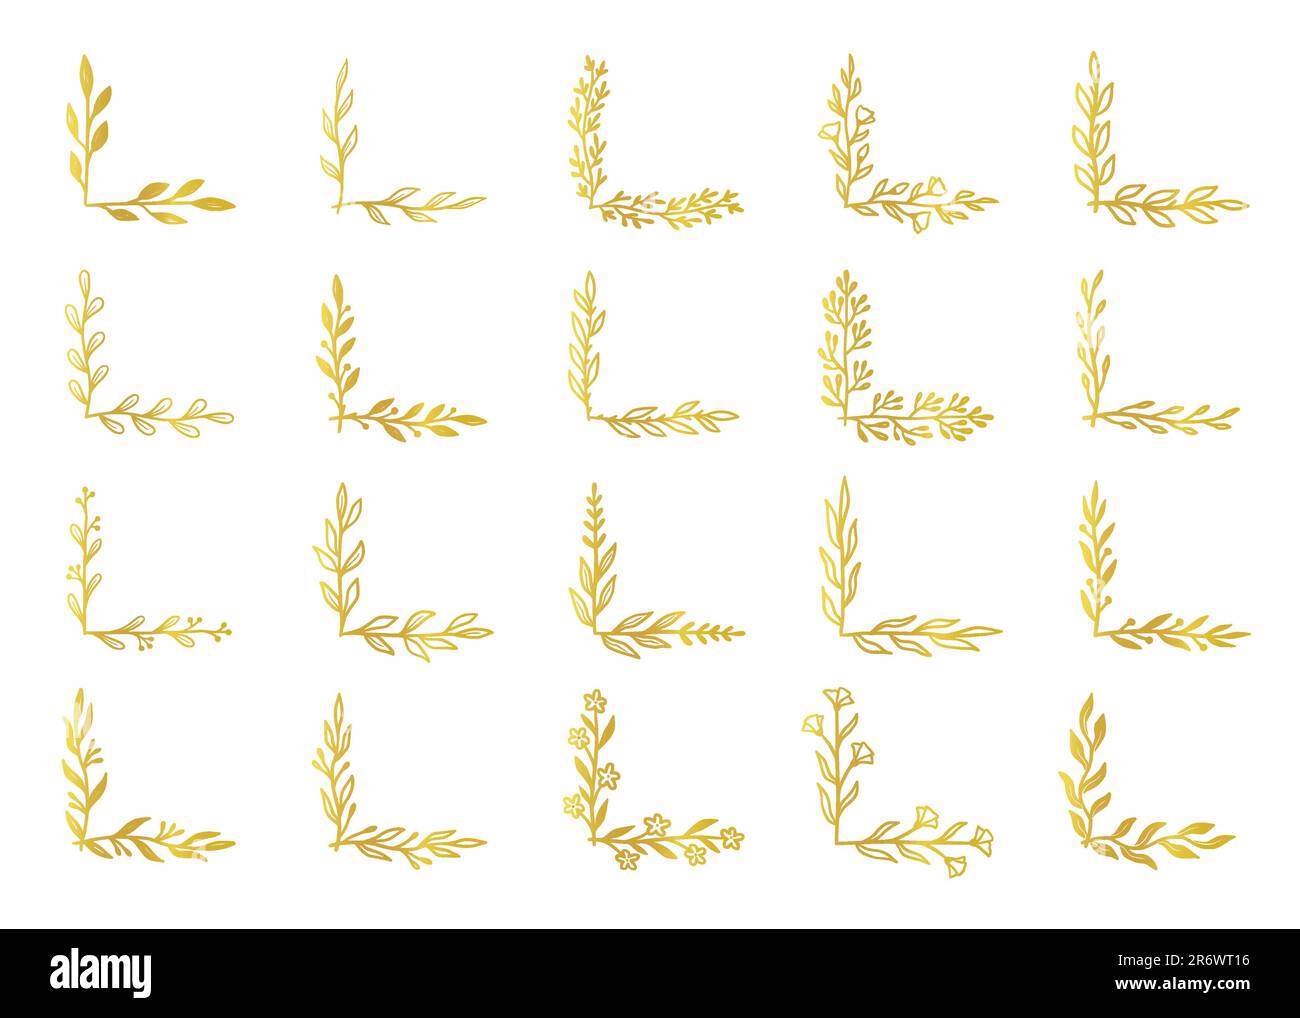 Goldener Eckrand, Blumendesign, Blumenrahmen. Handgezeichnete rustikale Skizze mit goldenen Ecken für Blumenrahmen, blumiges, schickes Muster. Vektordarstellung Stock Vektor